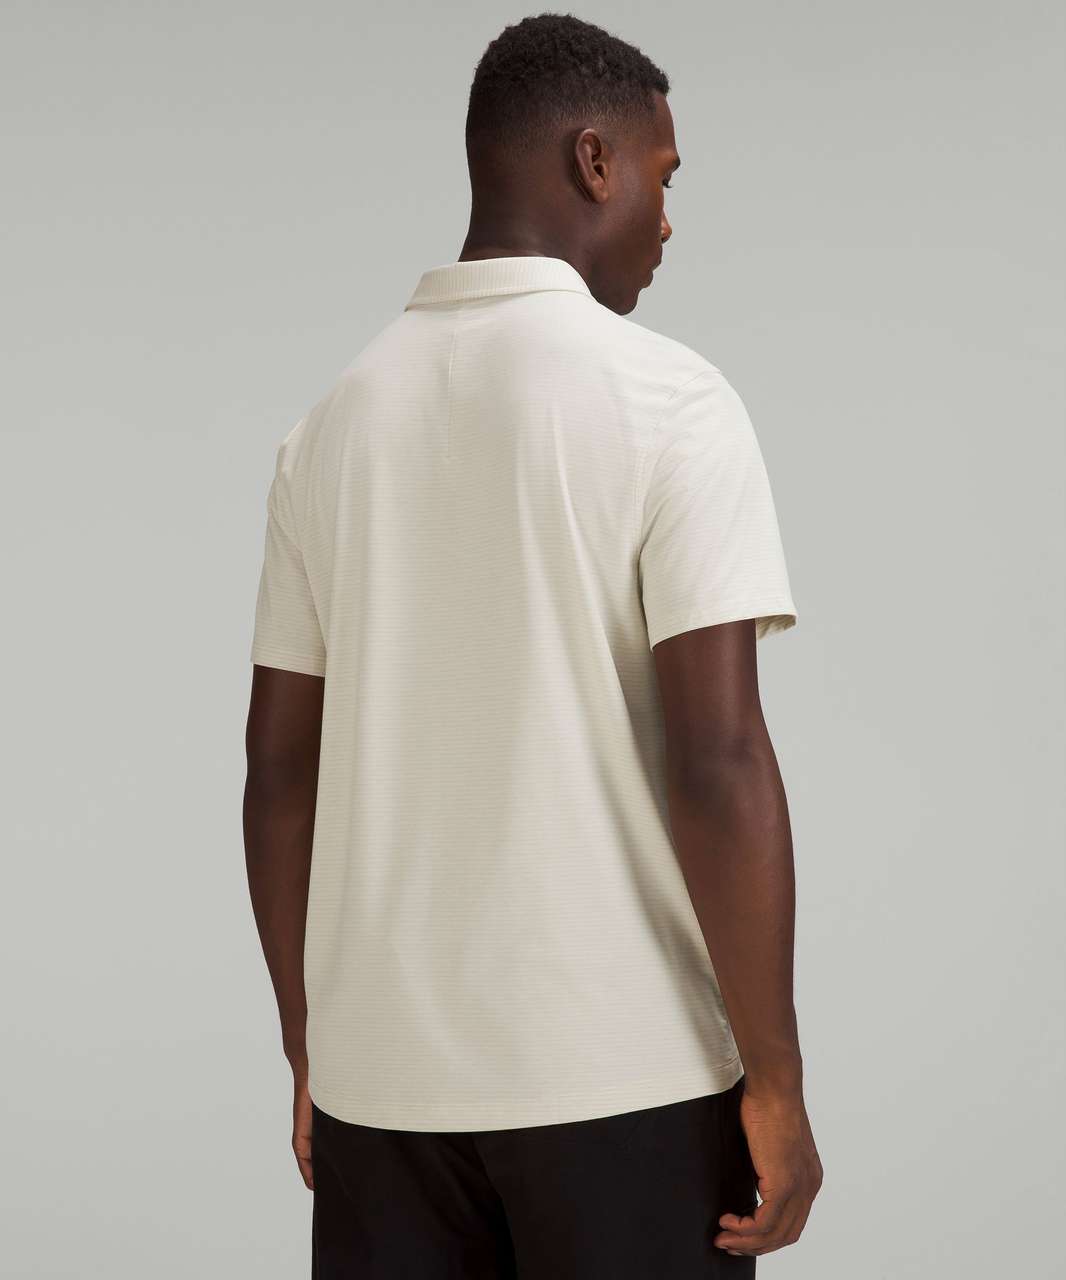 Lululemon Evolution Short Sleeve Polo Shirt - Heathered Natural Ivory